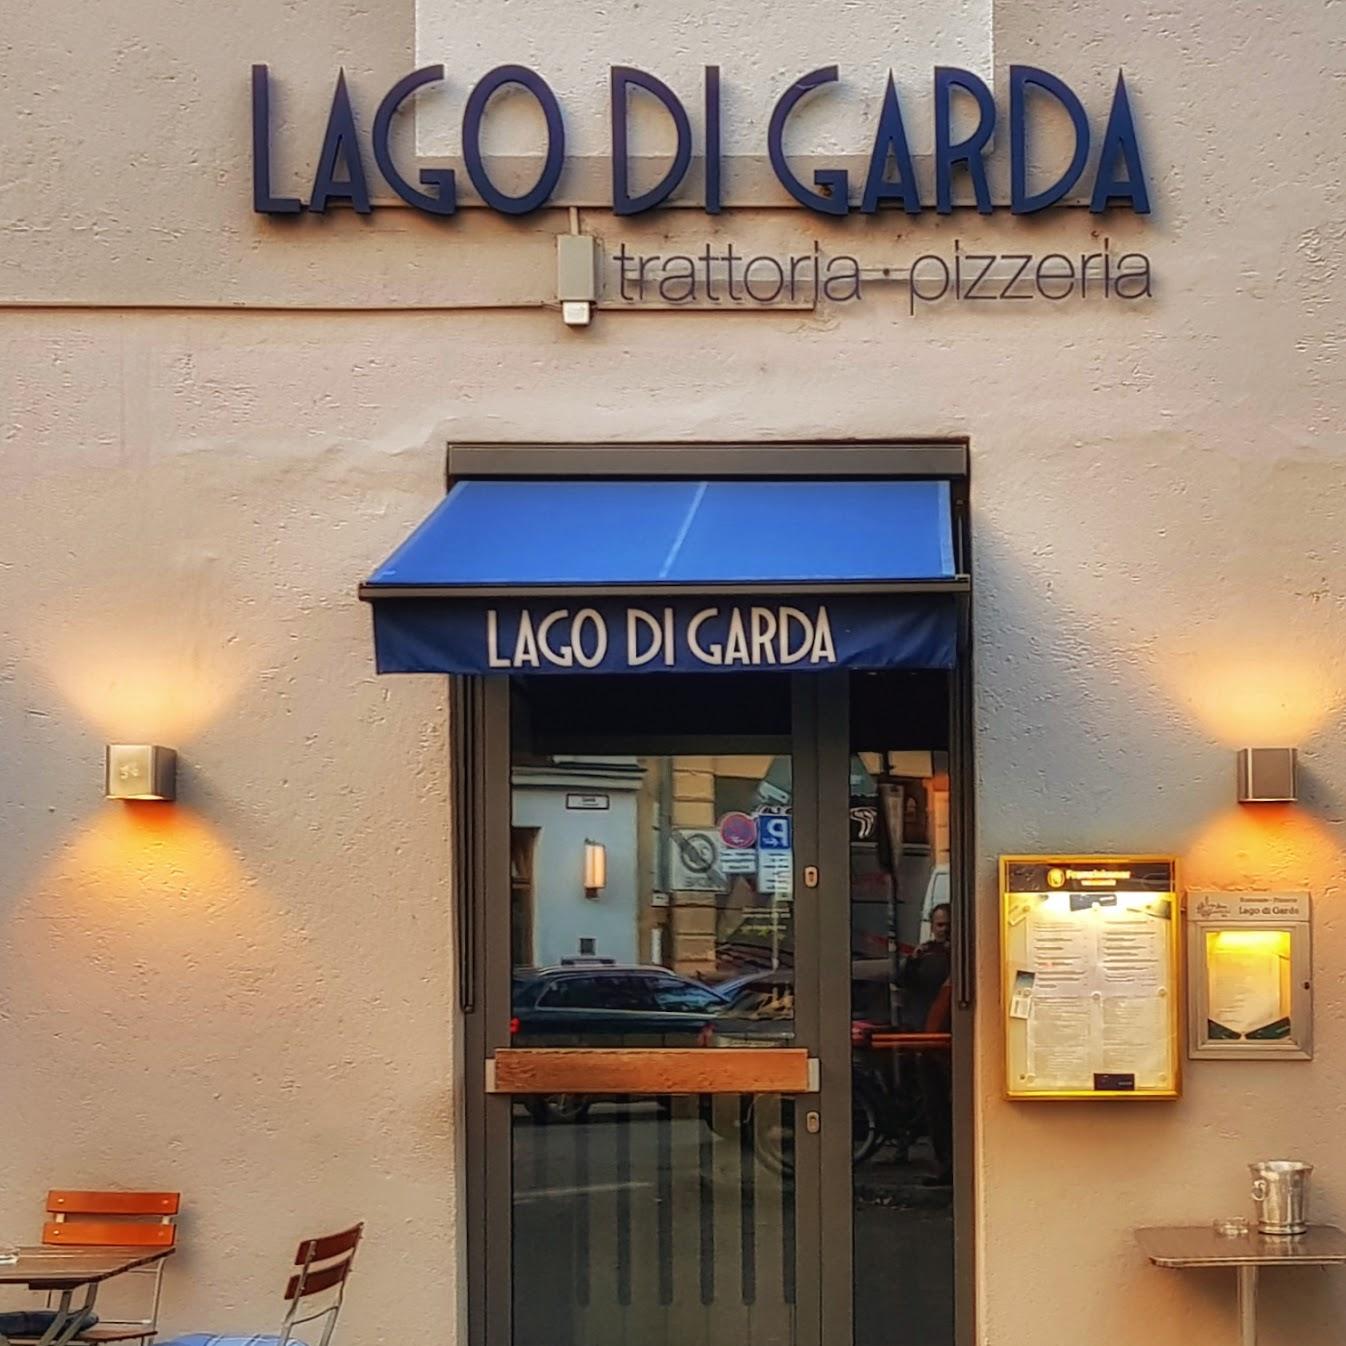 Restaurant "Trattoria Pizzeria Lago di Garda" in München